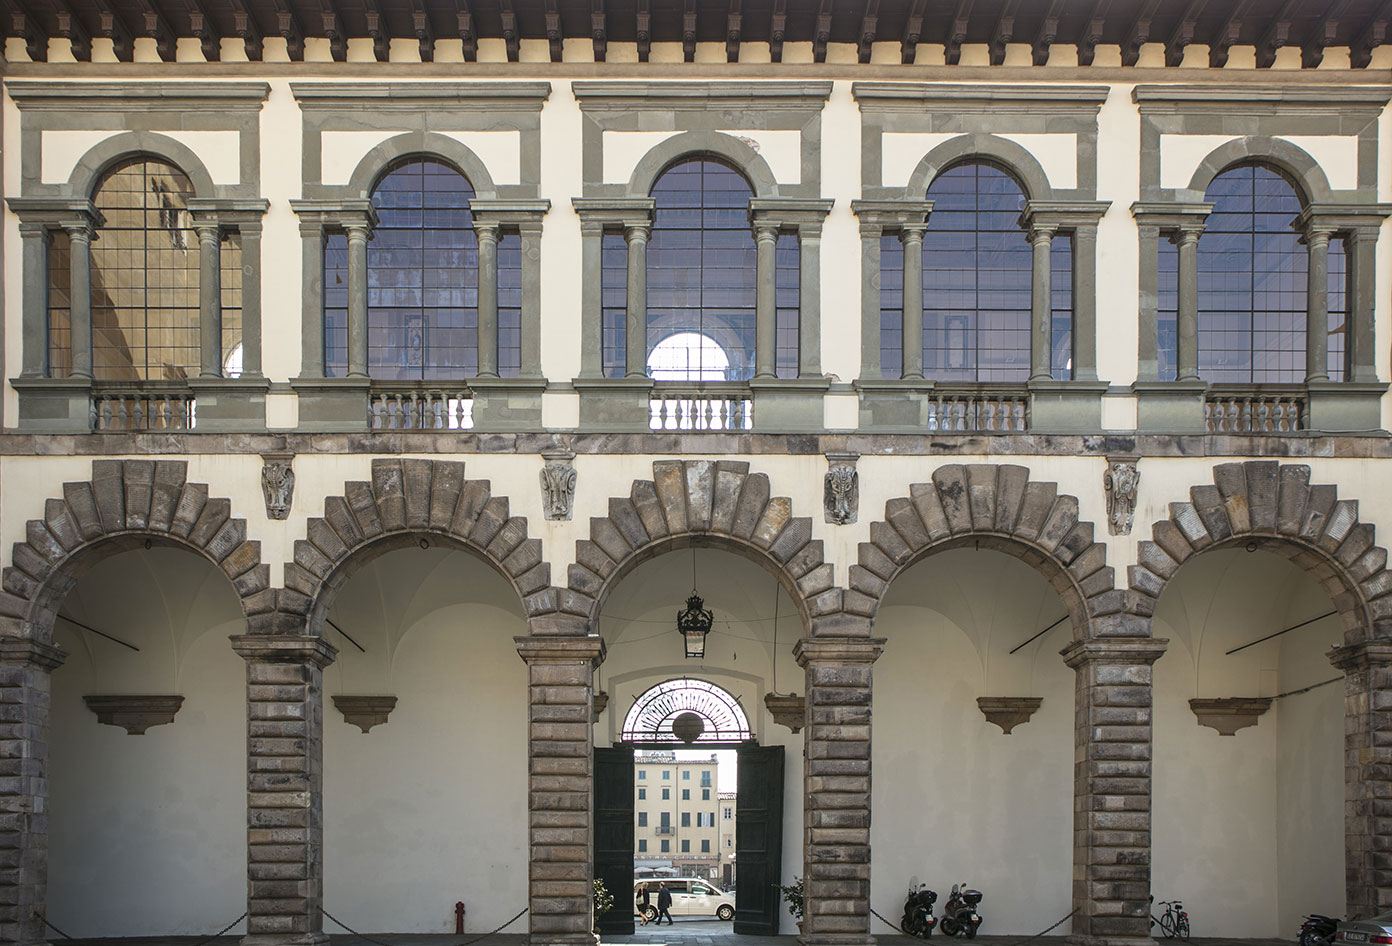 Ammannati Loggia's facade viewed from Cortile degli Svizzeri